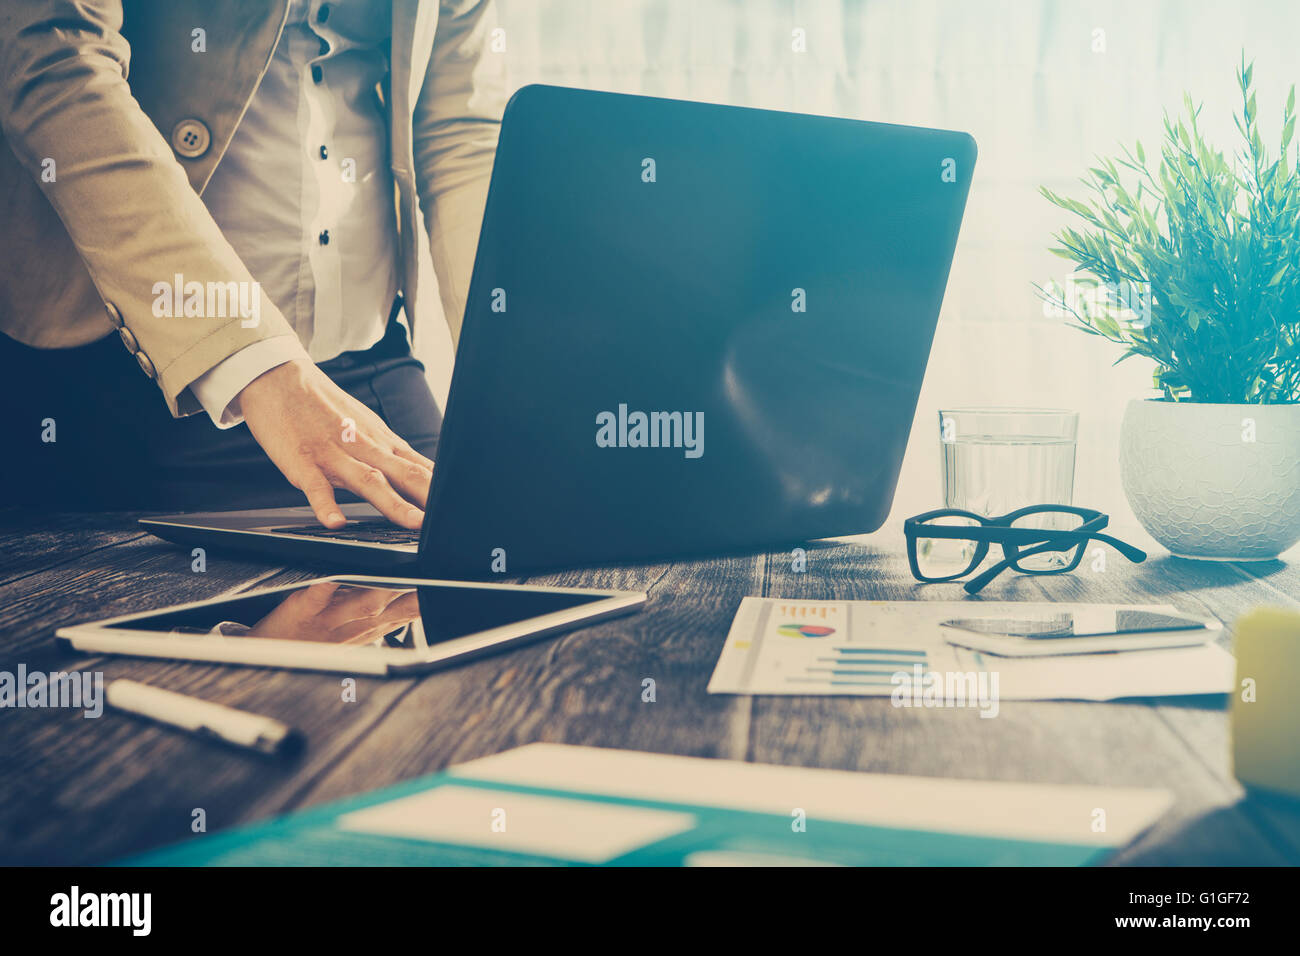 Planung Business Karriere arbeitsreichen Laptop Arbeitsplatz - stock Bild Stockfoto